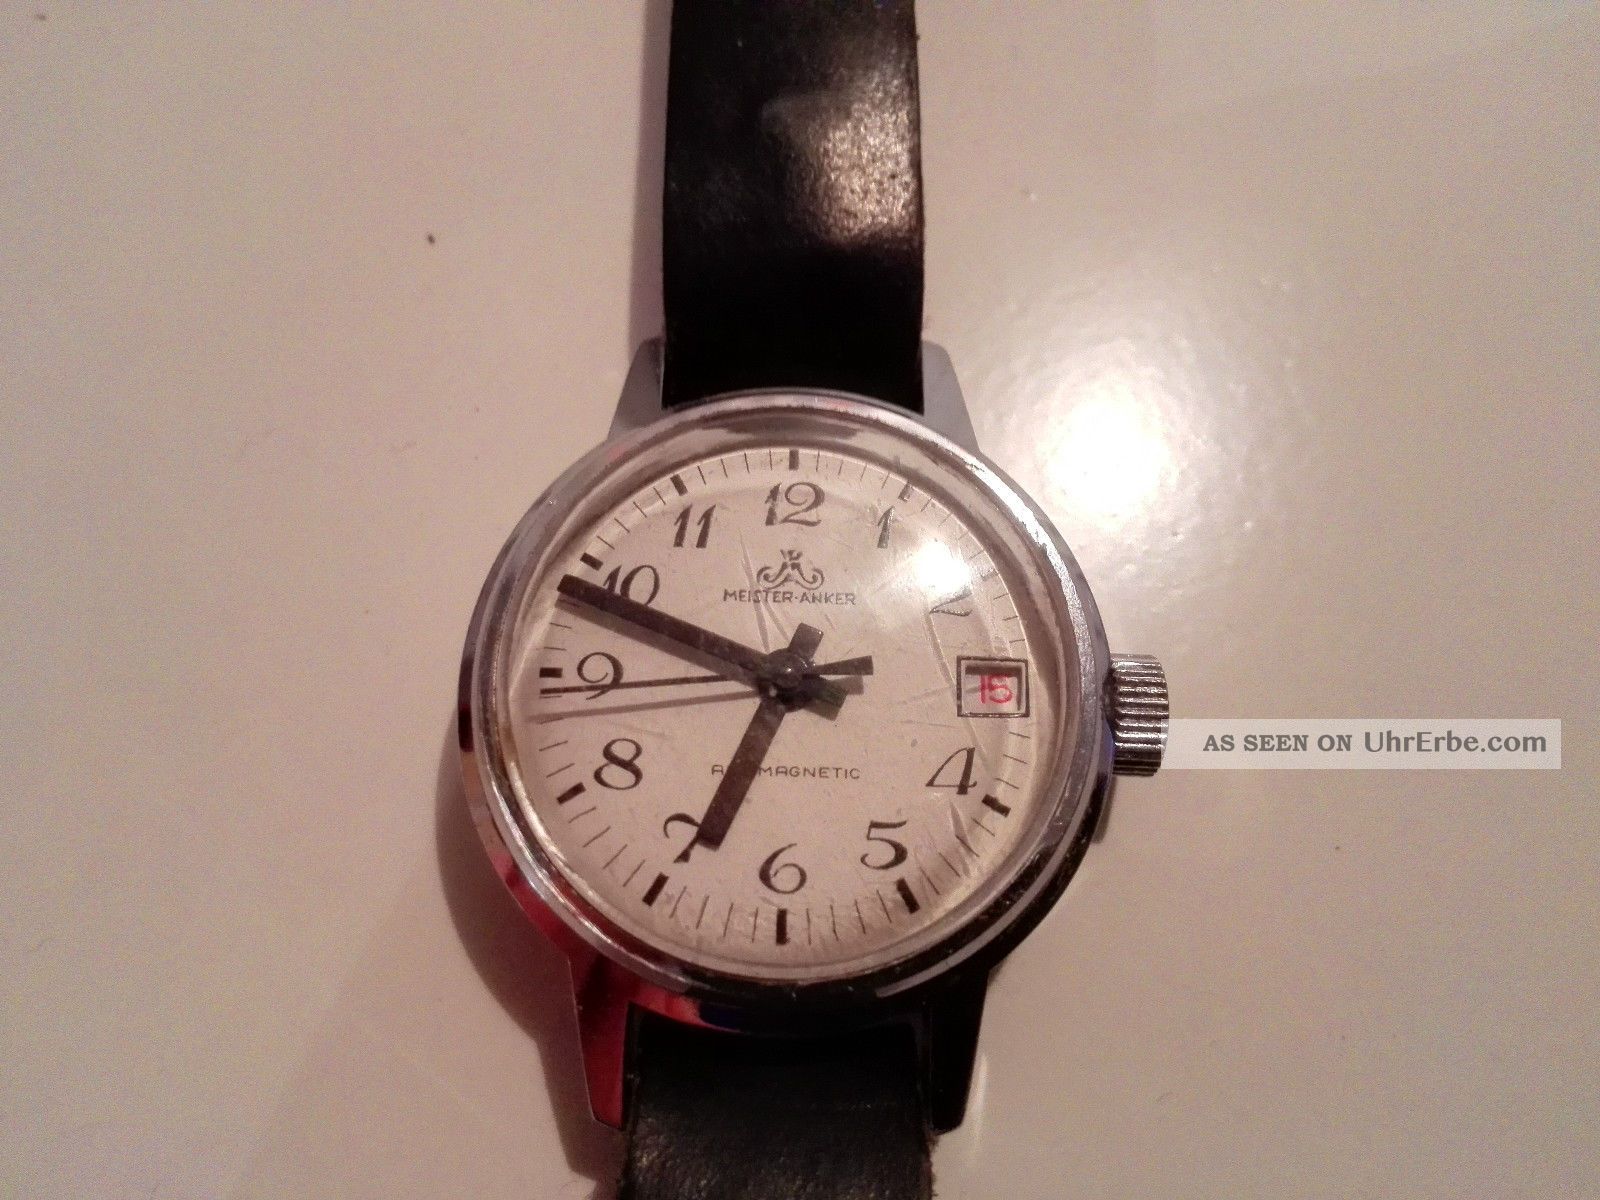 Seltne Meister Anker Damenuhr Handaufzug Deutsche Uhr Made In Germany Armbanduhren Bild